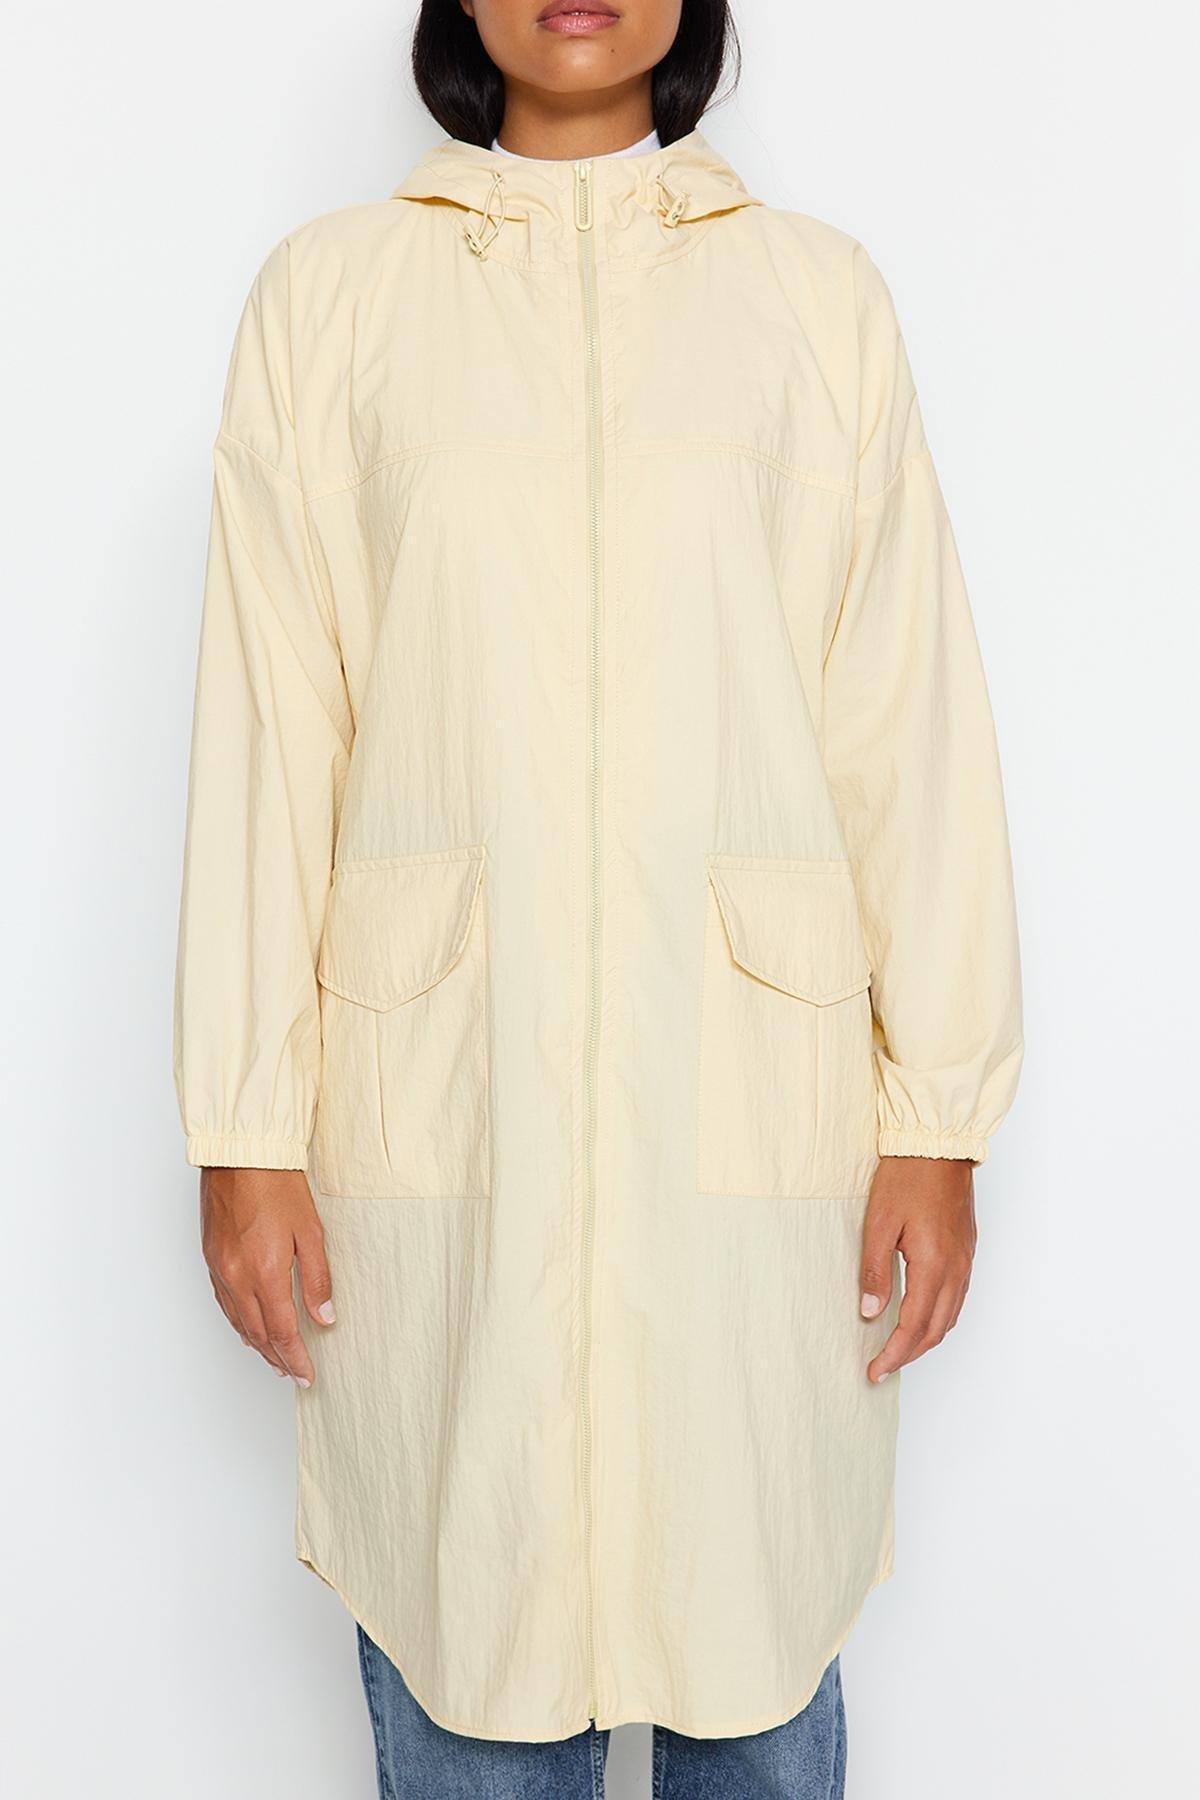 Trendyol - Beige Oversized Hooded Water Repellent Raincoat